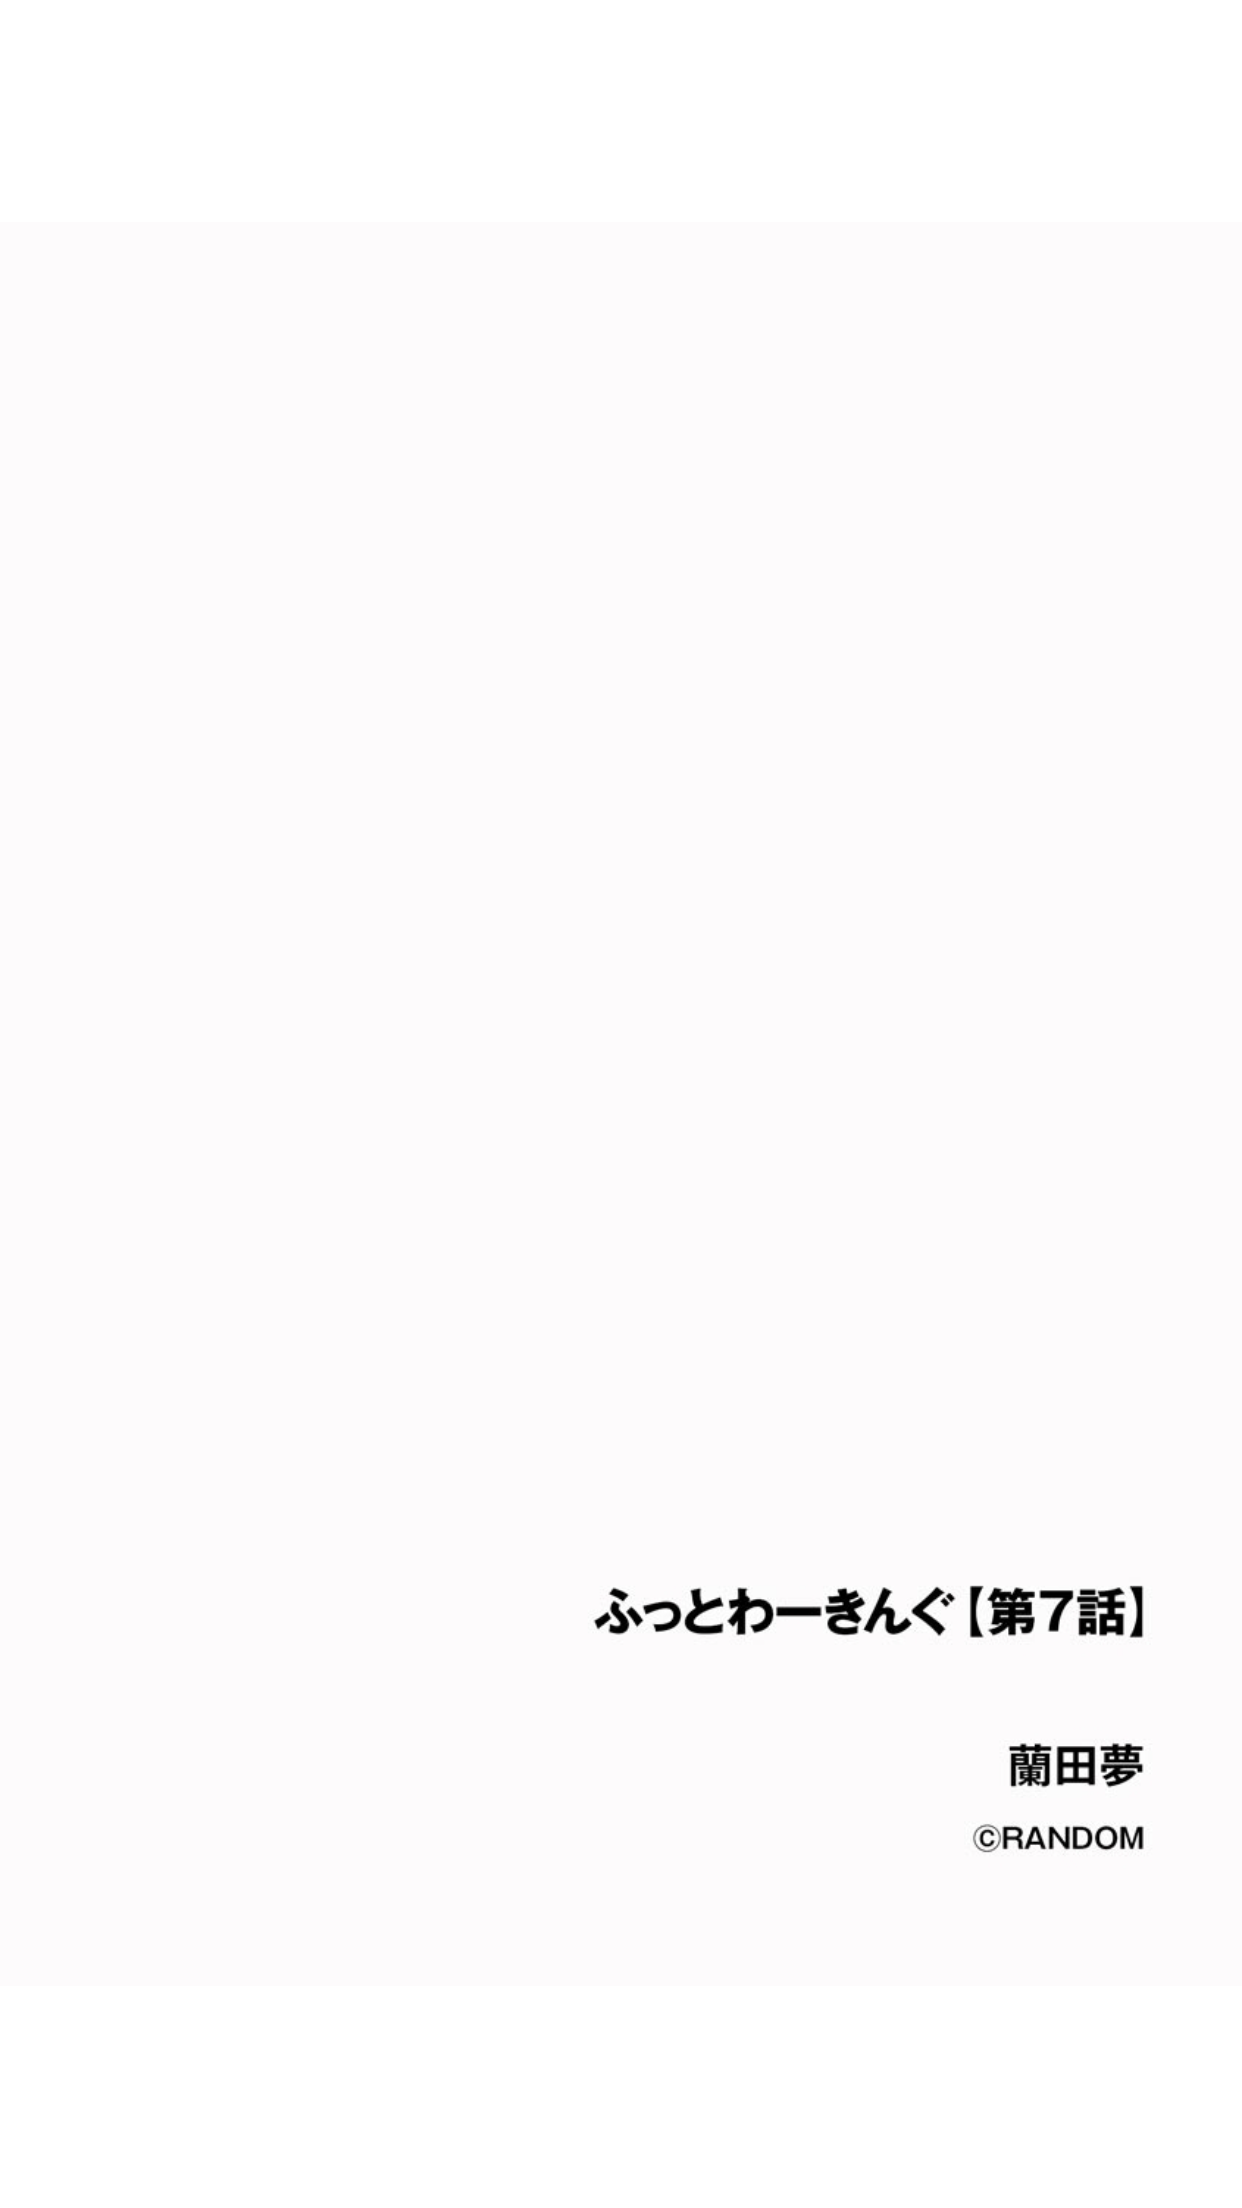 [蘭田夢] ふっとわーきんぐ 第7話 (サイベリアplus Vol.1)